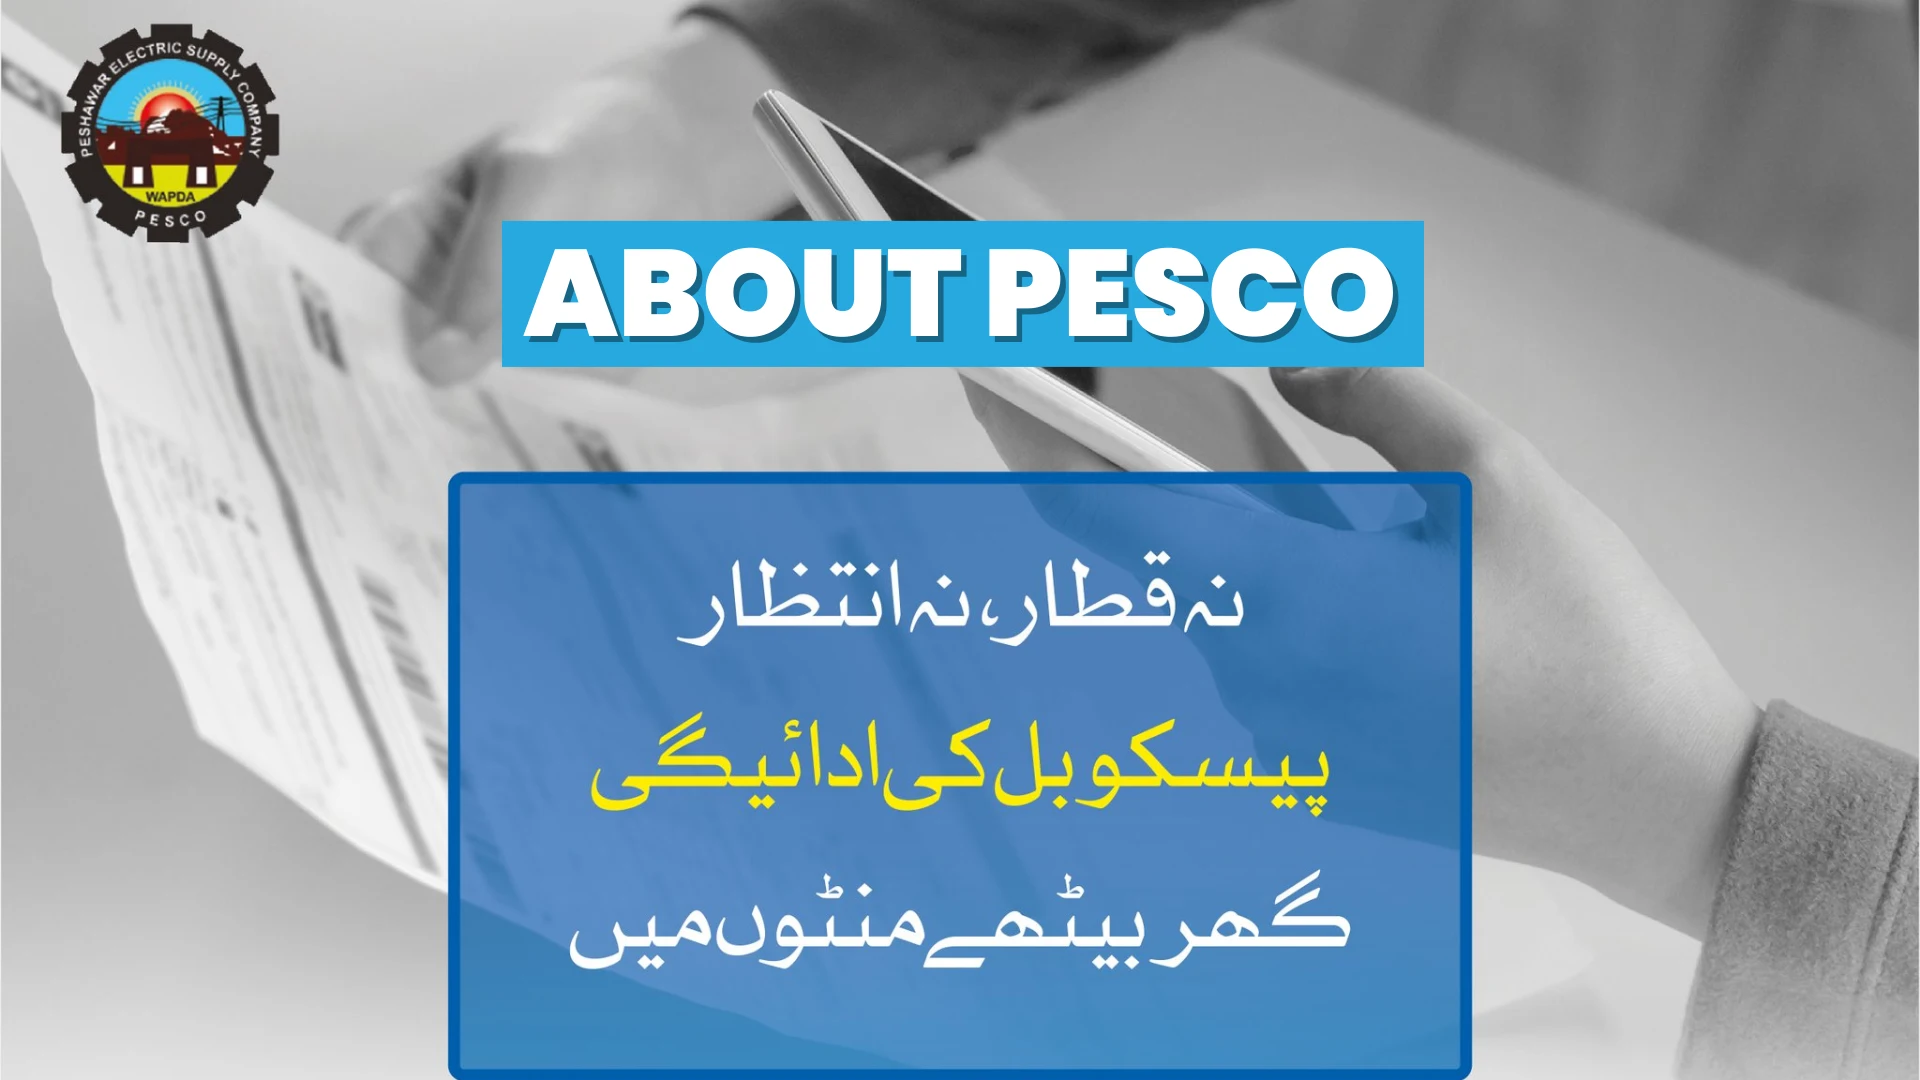 About PESCO